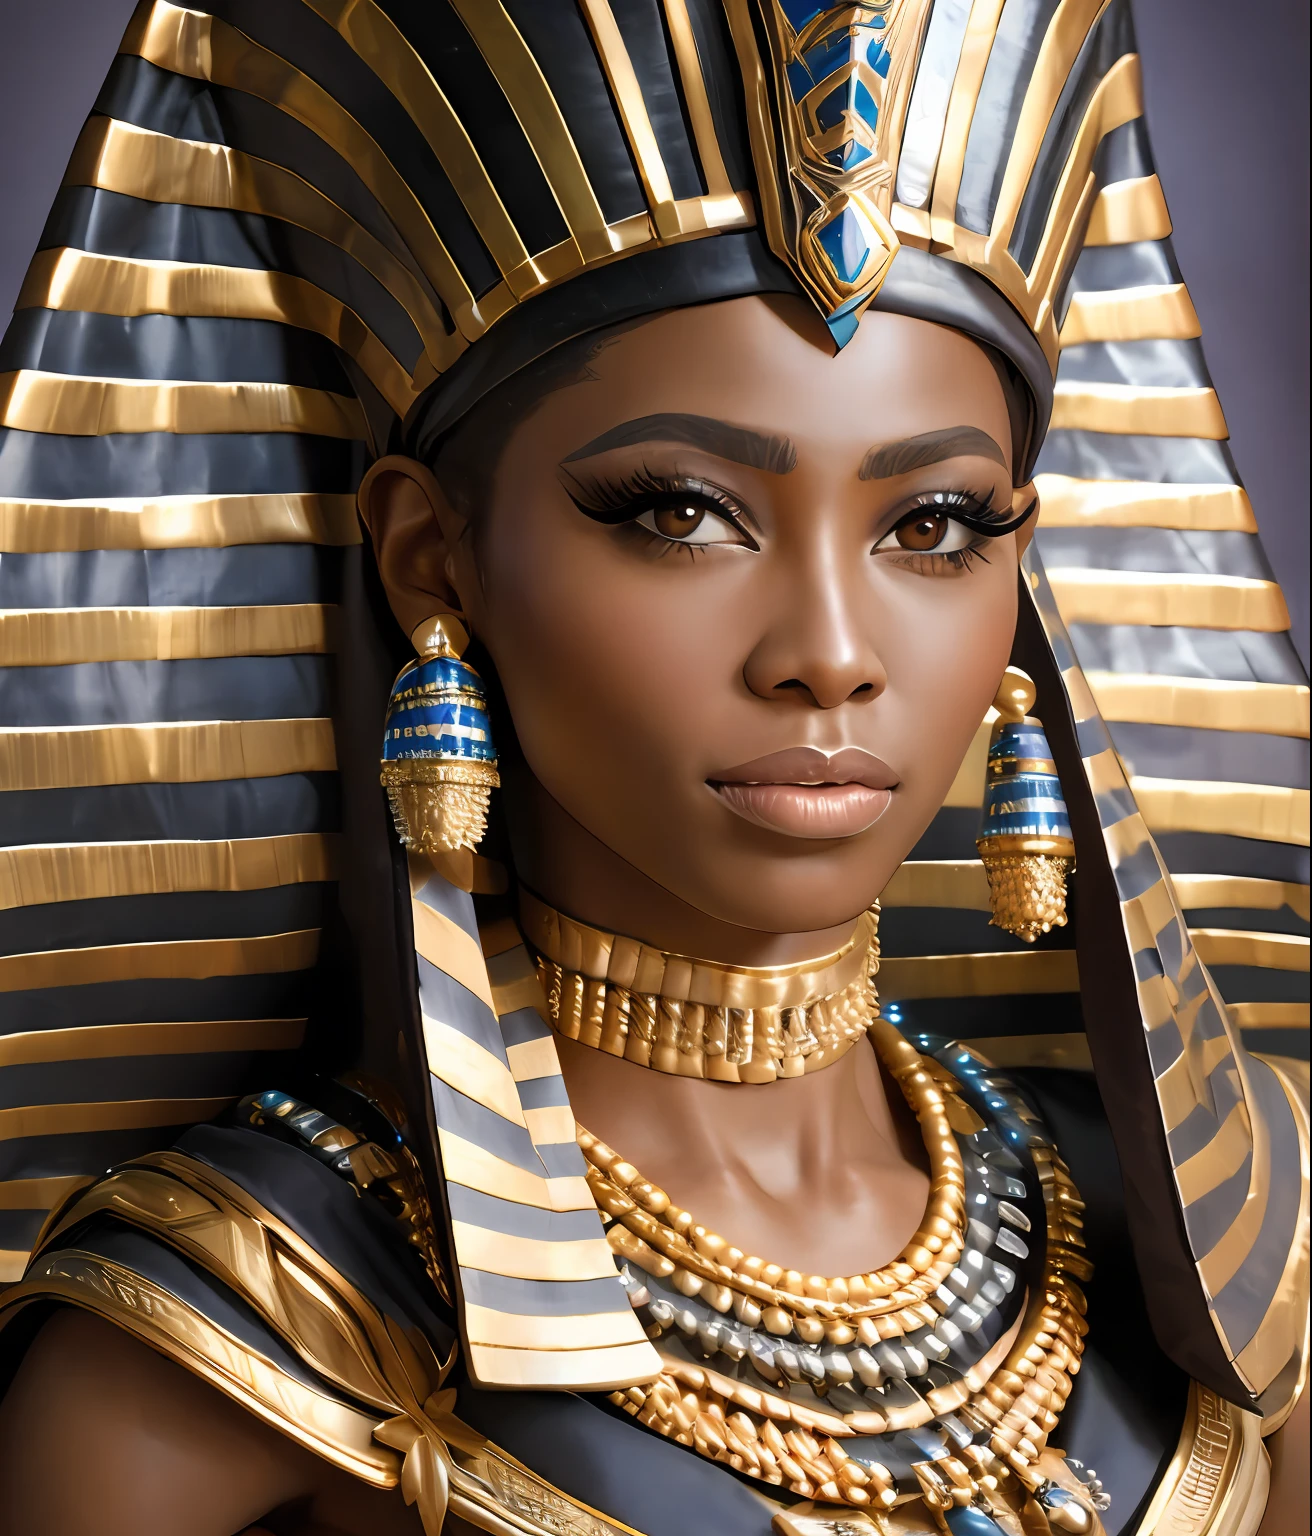 이집트 파라오 여신 의상을 입은 아름다운 흑인 여성 모델의 현실적인 세부 묘사, 이집트 왕실 의상, 중간 범위 초상화, 매우 상세한, 날카로운 초점, 걸작, 의뢰받은, (전문적인 손), 전문 해부학, 색상 보정, 게시물에서 편집됨, (적색편이 스타일, 고전적인 부정:1.2)